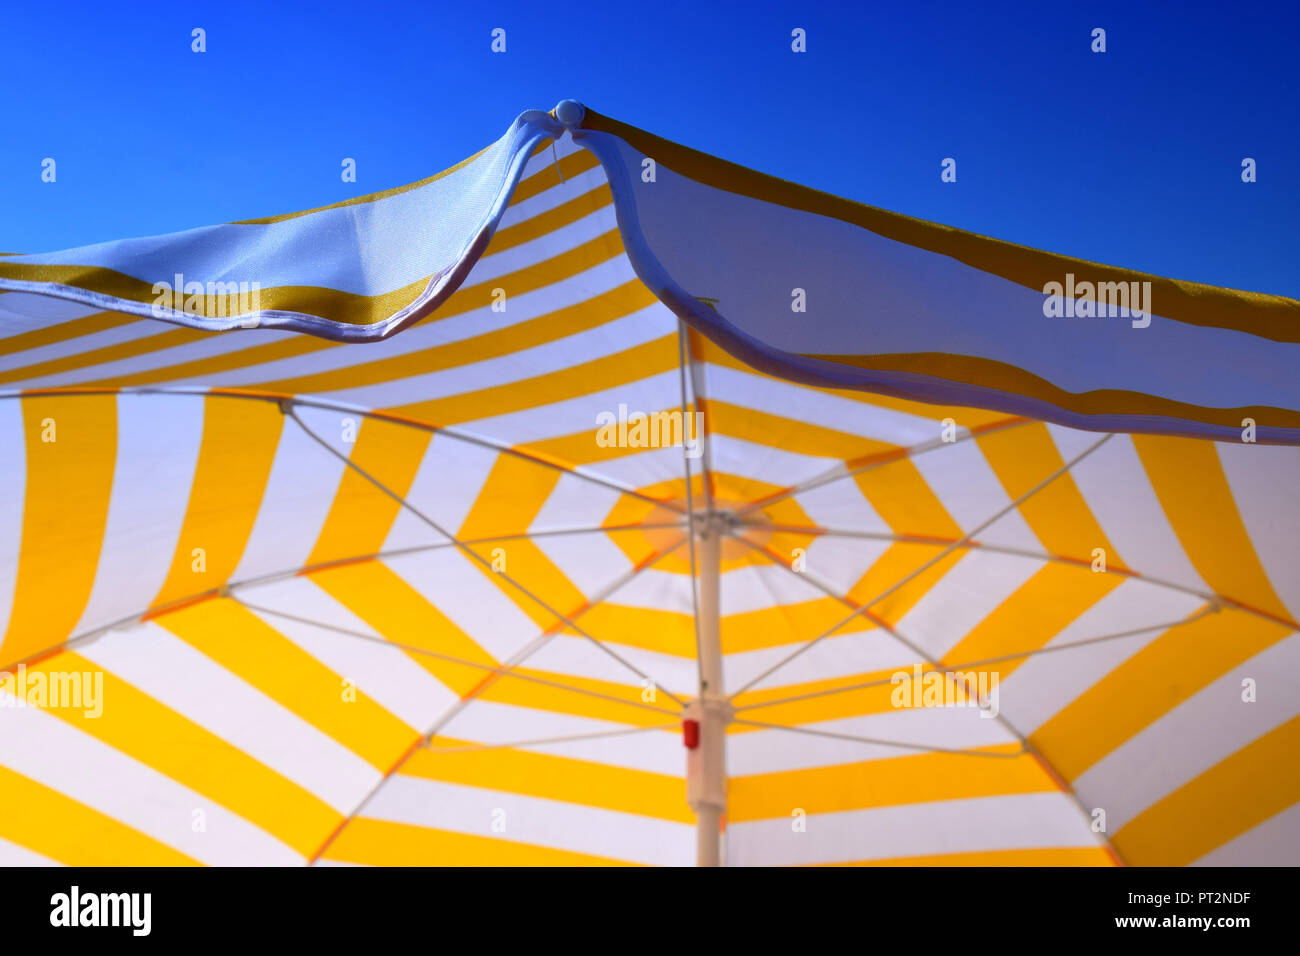 Big weiß und gelb gestreifte Schirm und klaren Sommer Himmel, gelb-weiß  gestreifte Sonnenschirm vor dem azurblauen Himmel als Symbol für  Ferienhäuser Stockfotografie - Alamy